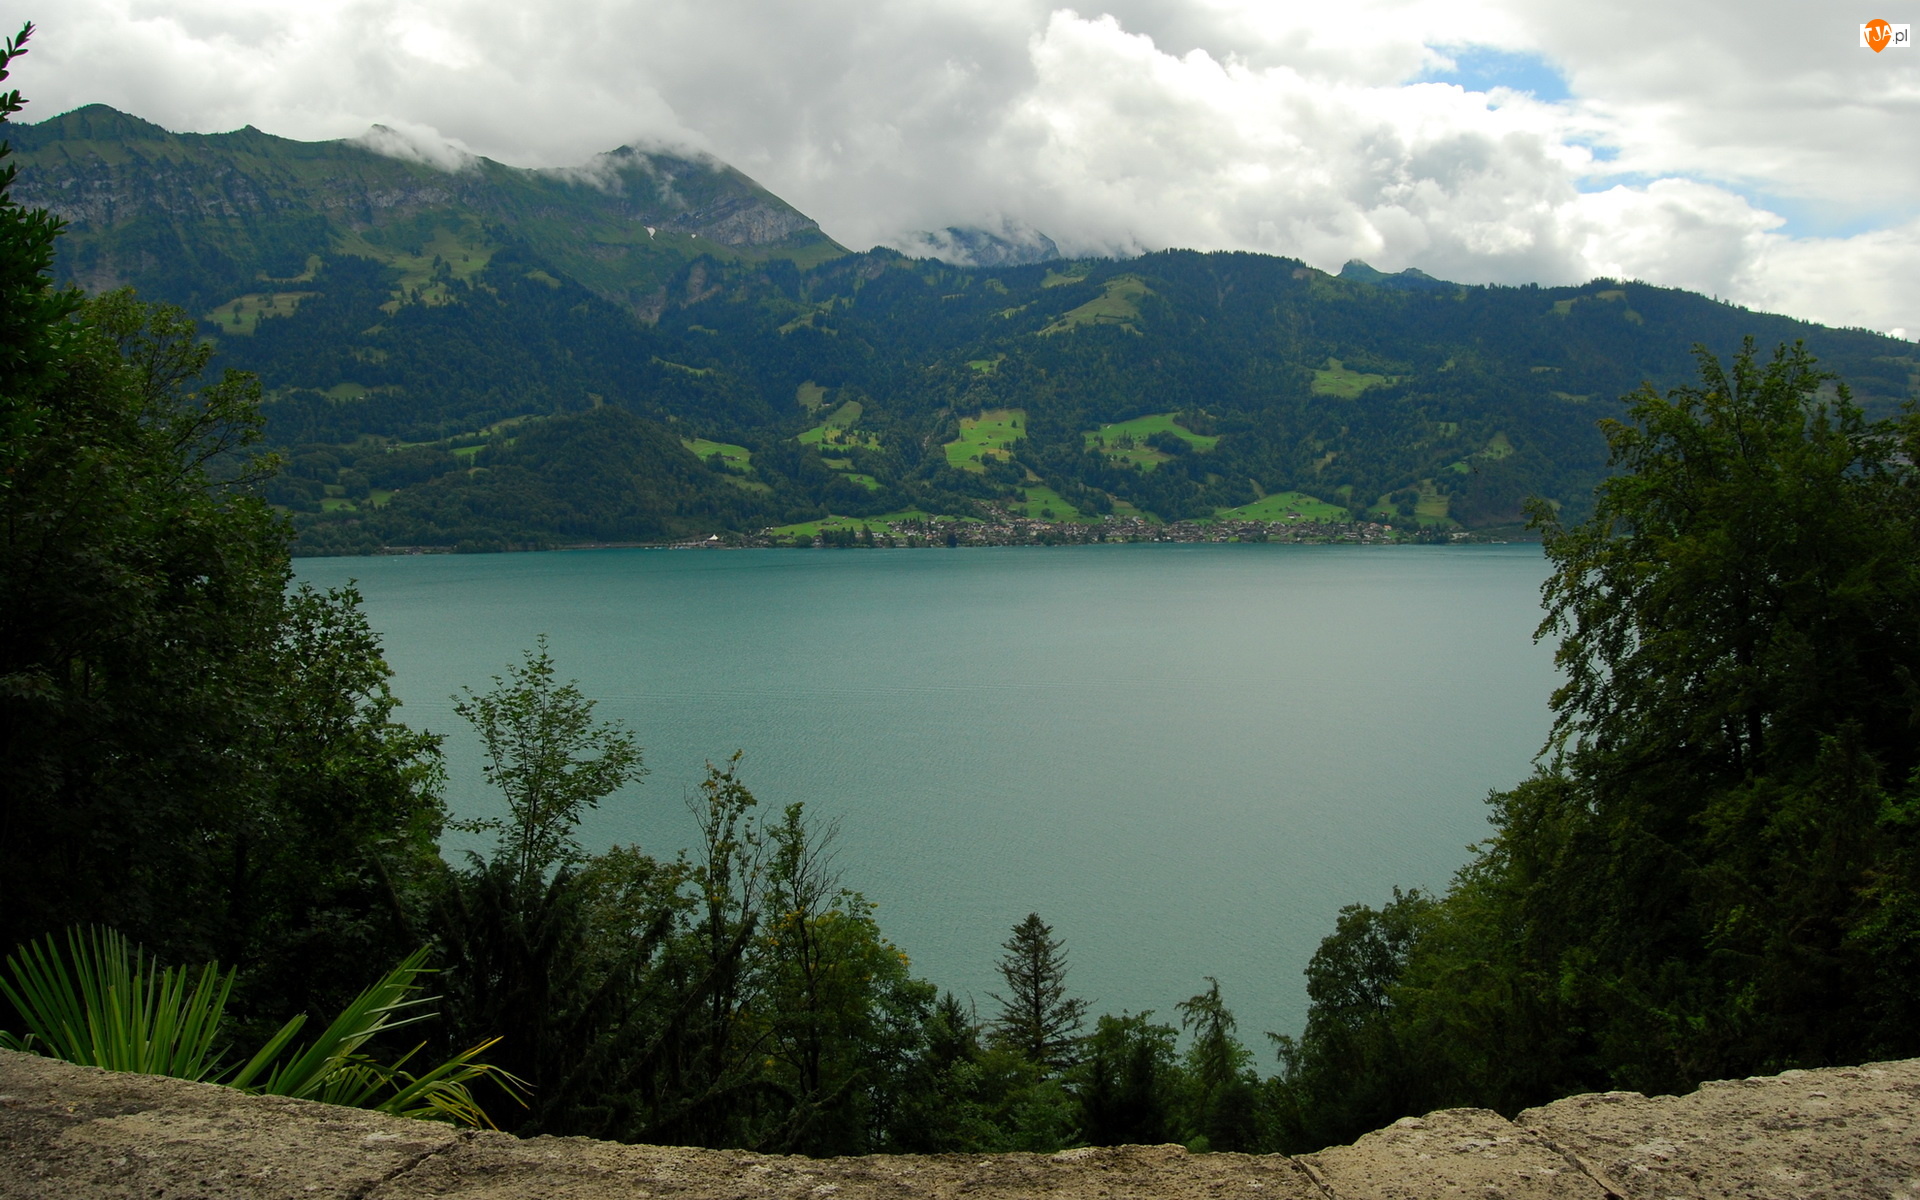 Alpy Berneńskie, Góry, Drzewa, Szwajcaria, Jezioro Thunersee, Kanton Berno